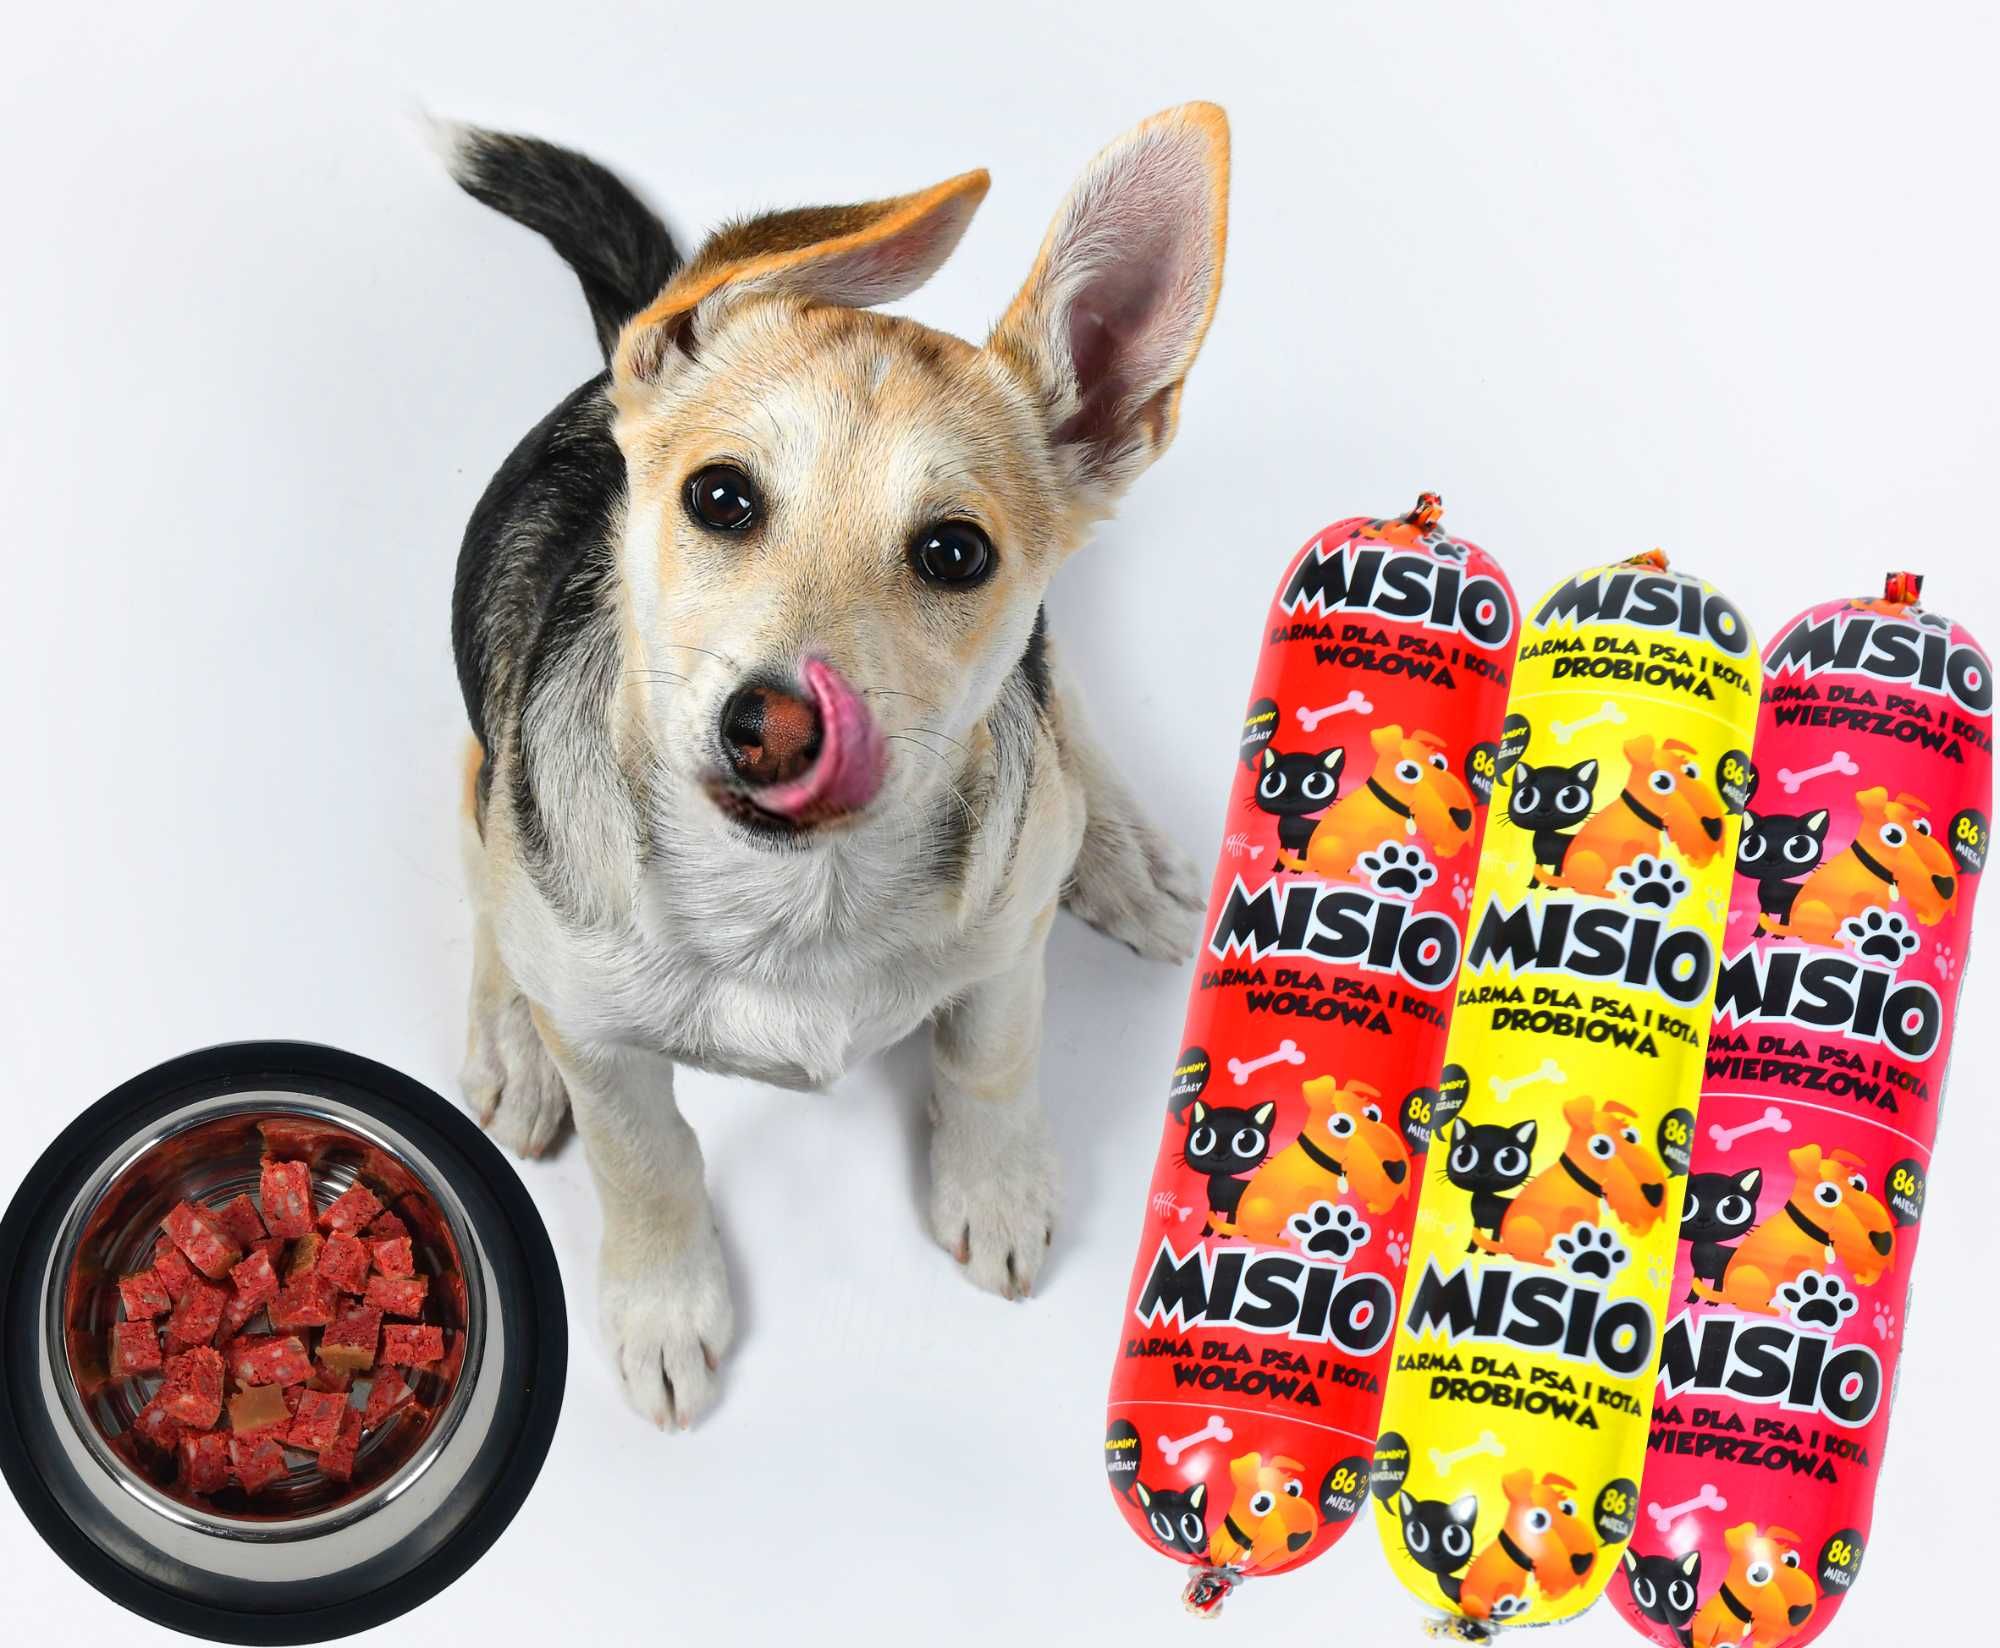 Wysyłka gratis!!! 29kg Karma dla psa Misio 83% mięsa mix smaków 29szt.